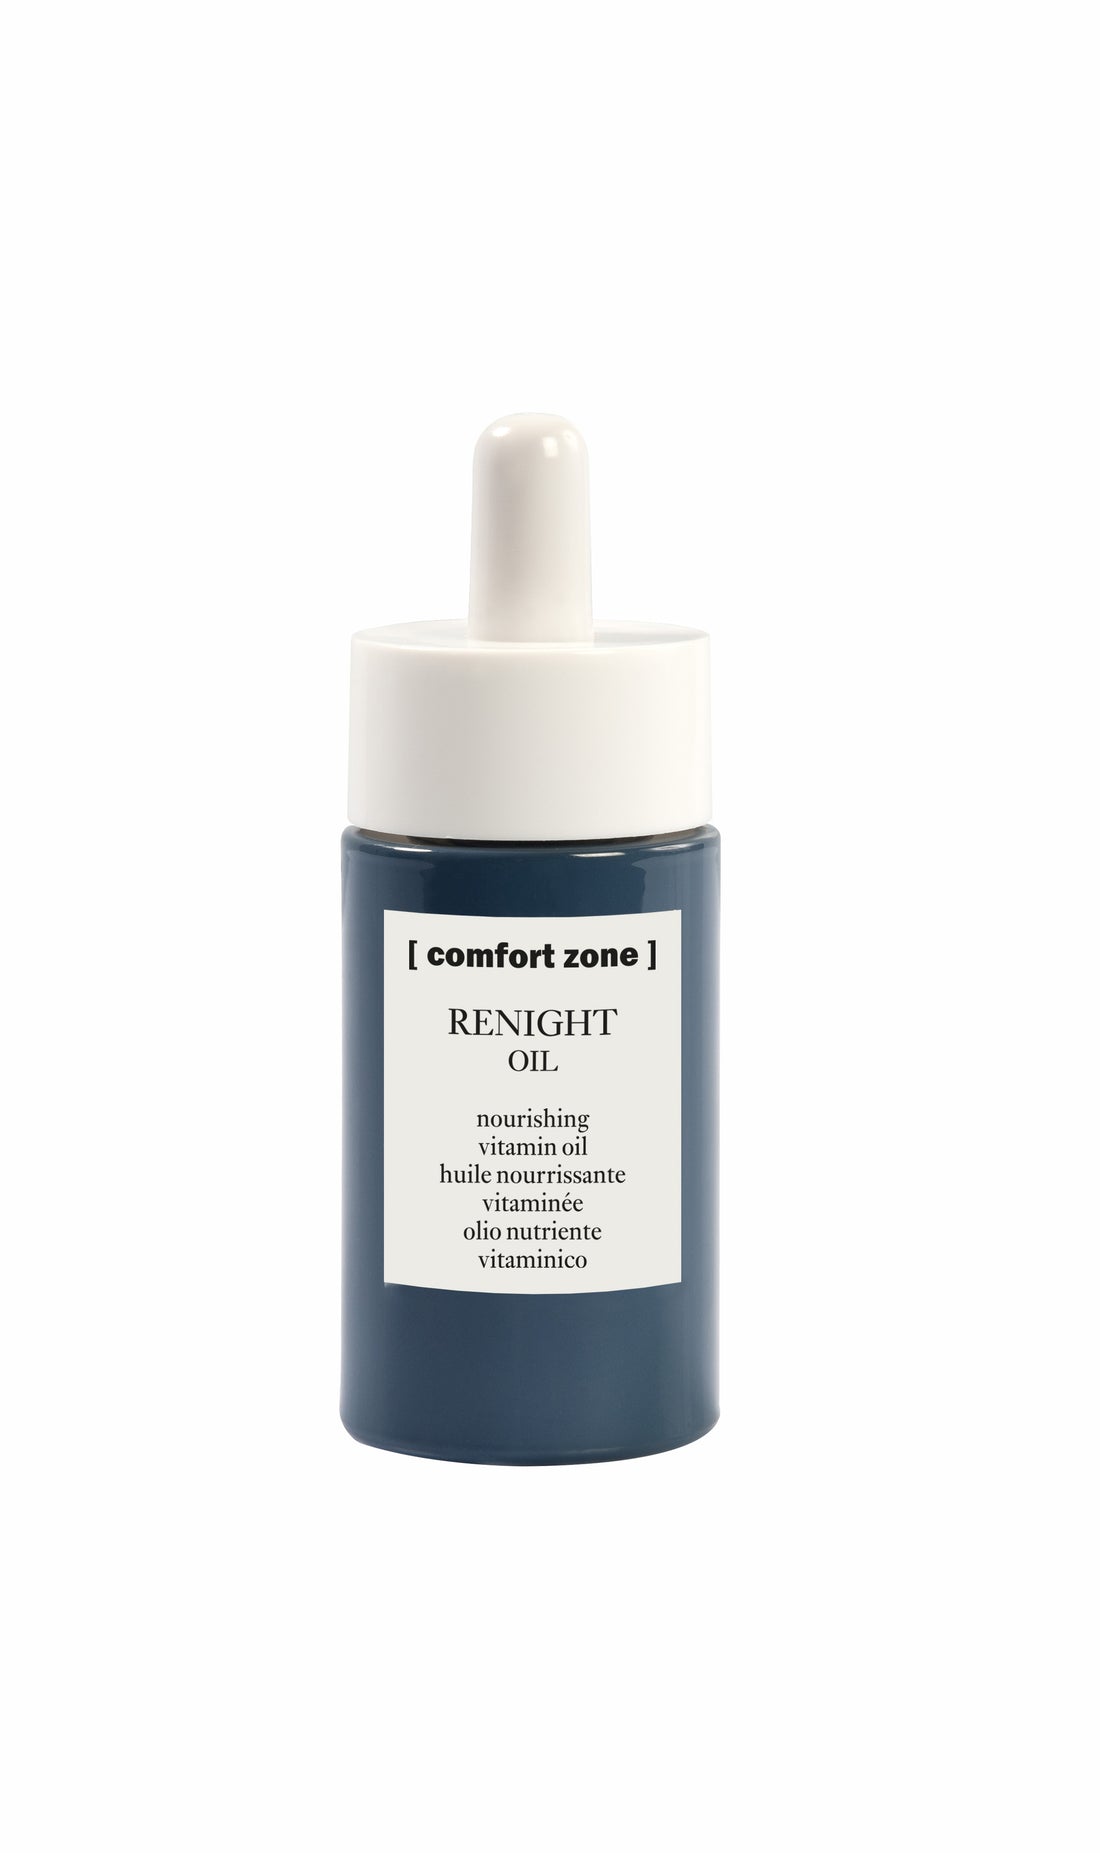 Product Spotlight: Renight Oil